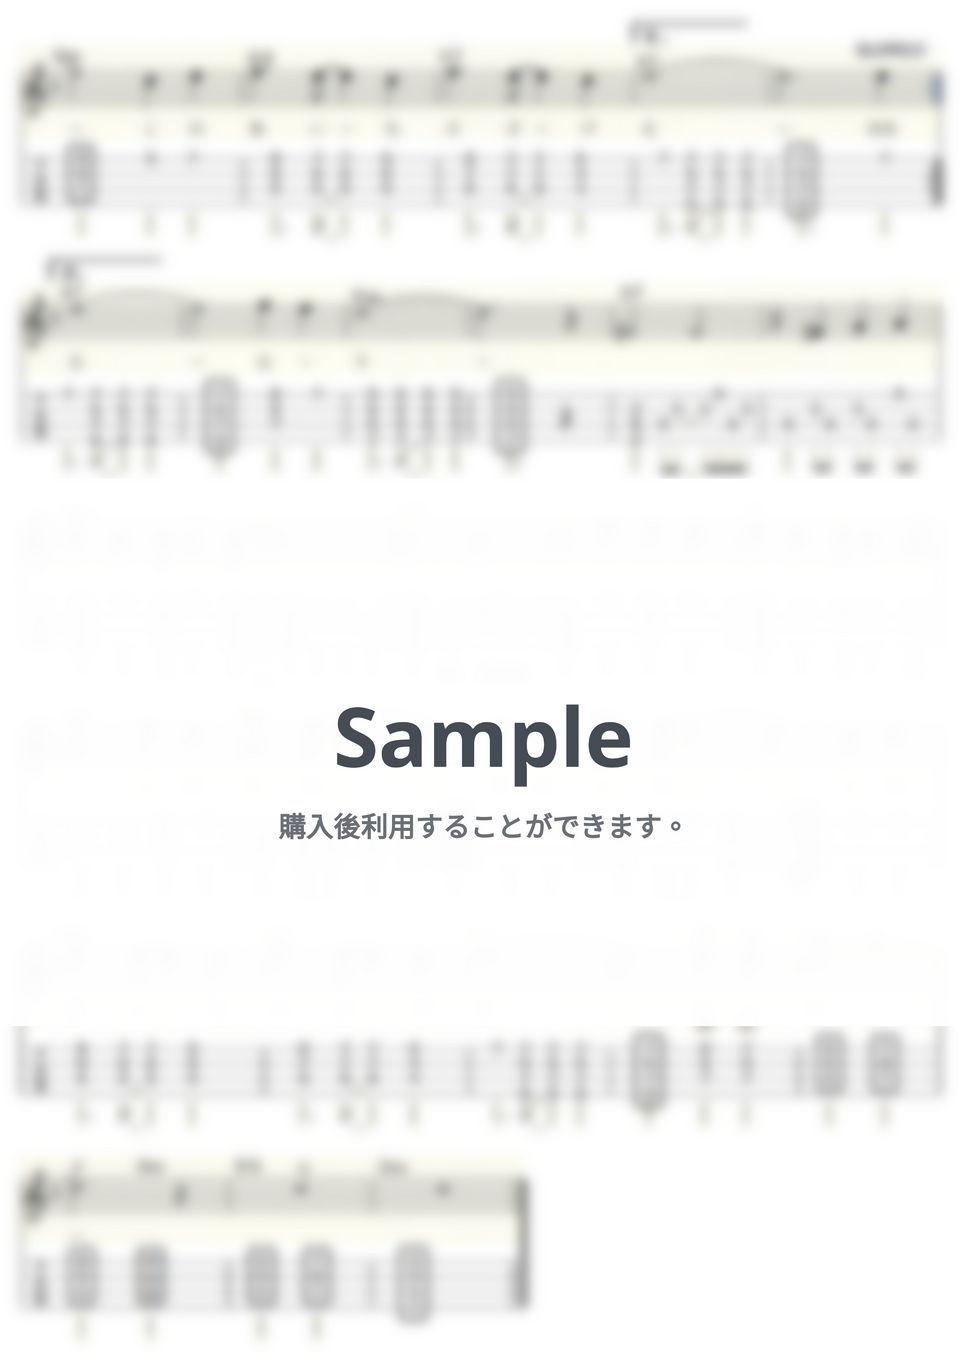 西城秀樹 - 傷だらけのローラ (ｳｸﾚﾚｿﾛ/High-G・Low-G/中級) by ukulelepapa